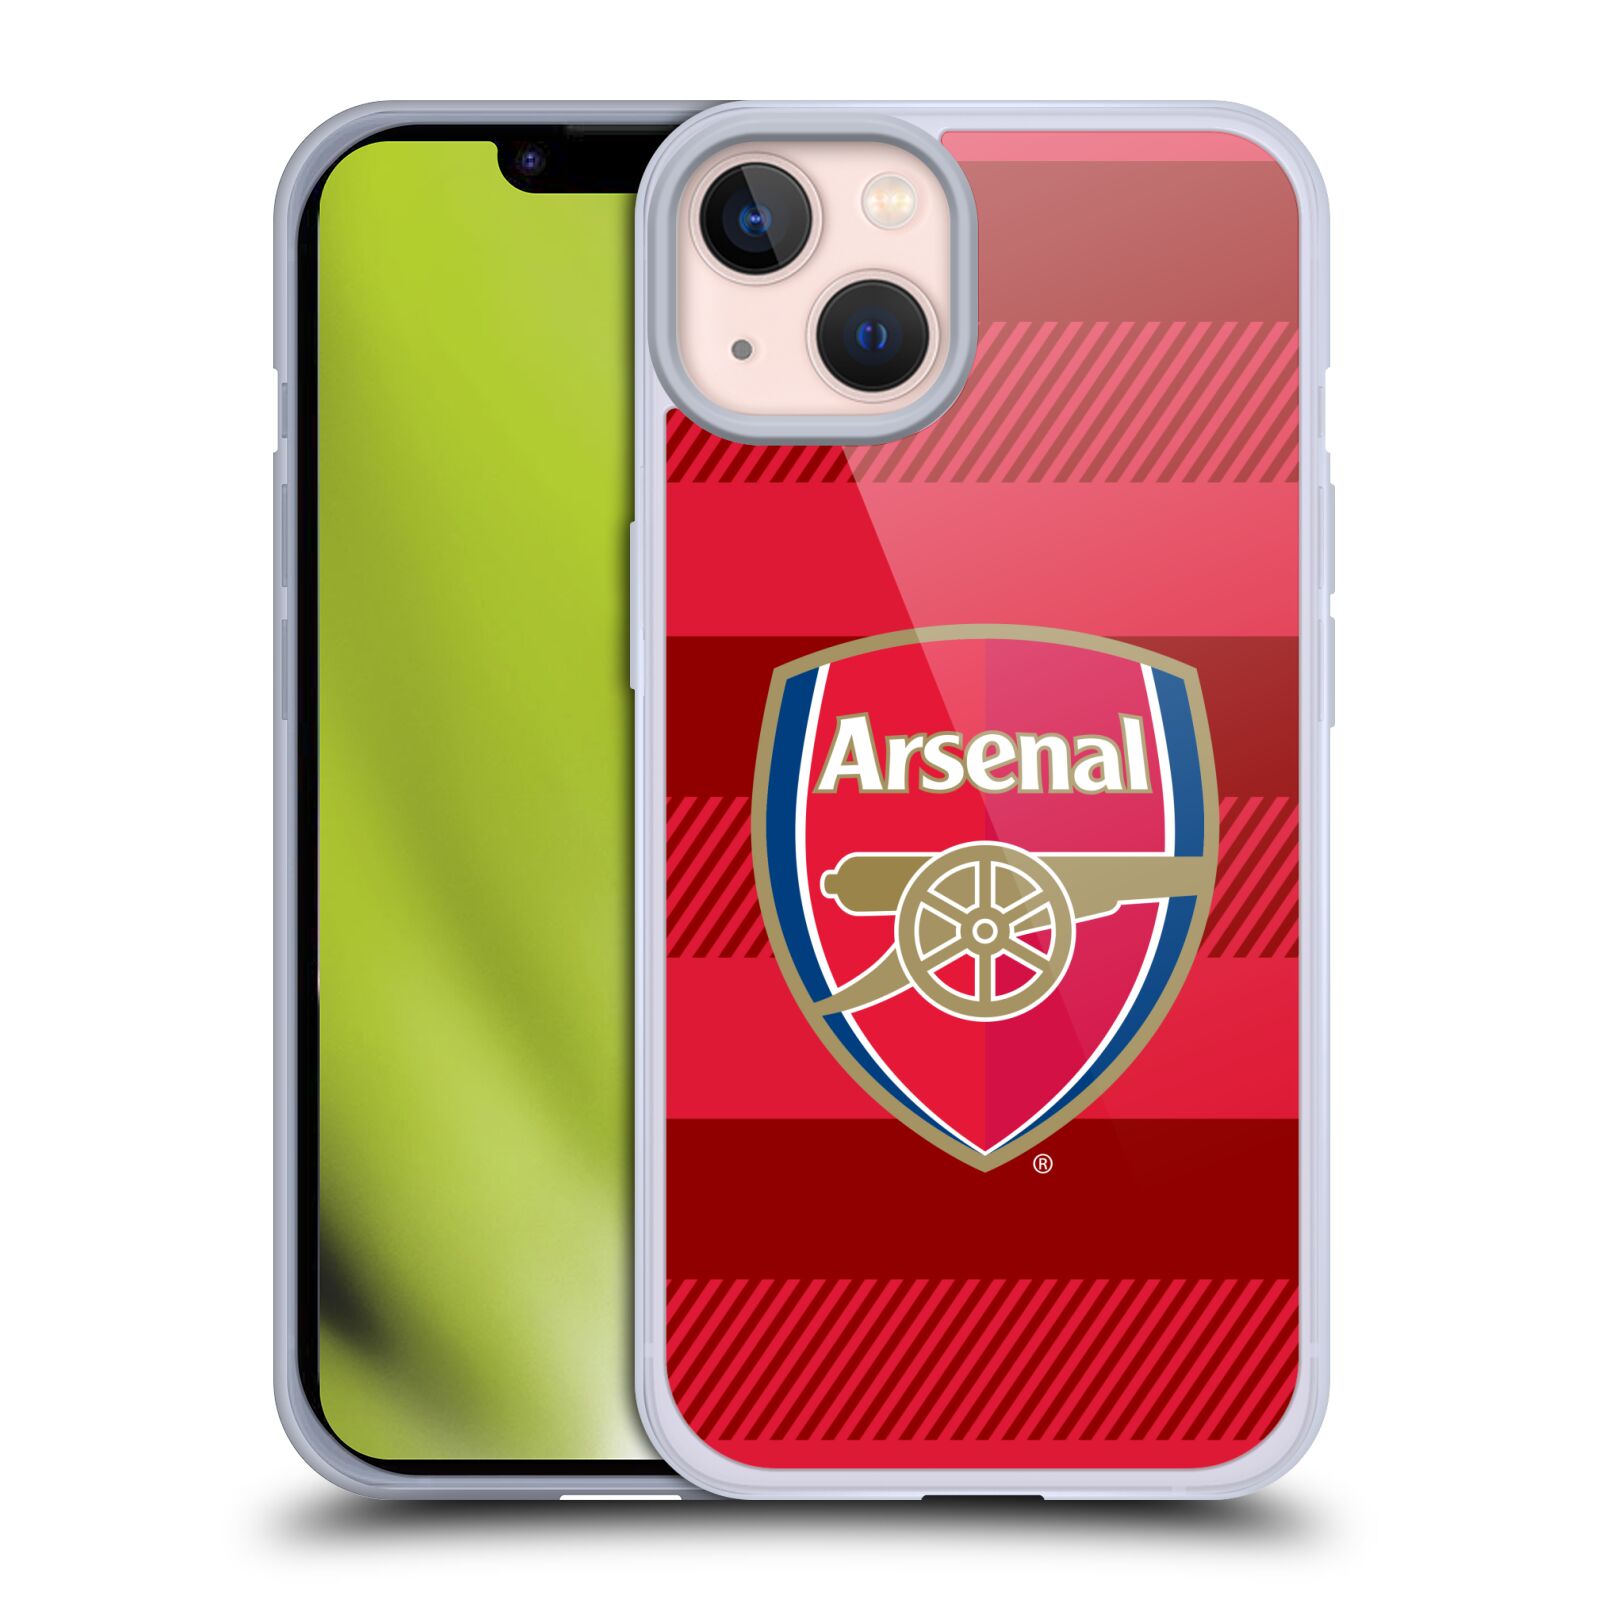 Silikonové pouzdro na mobil Apple iPhone 13 - Head Case - Arsenal FC - Logo s pruhy (Silikonový kryt, obal, pouzdro na mobilní telefon s motivem klubu Arsenal FC - Logo s pruhy pro Apple iPhone 13)